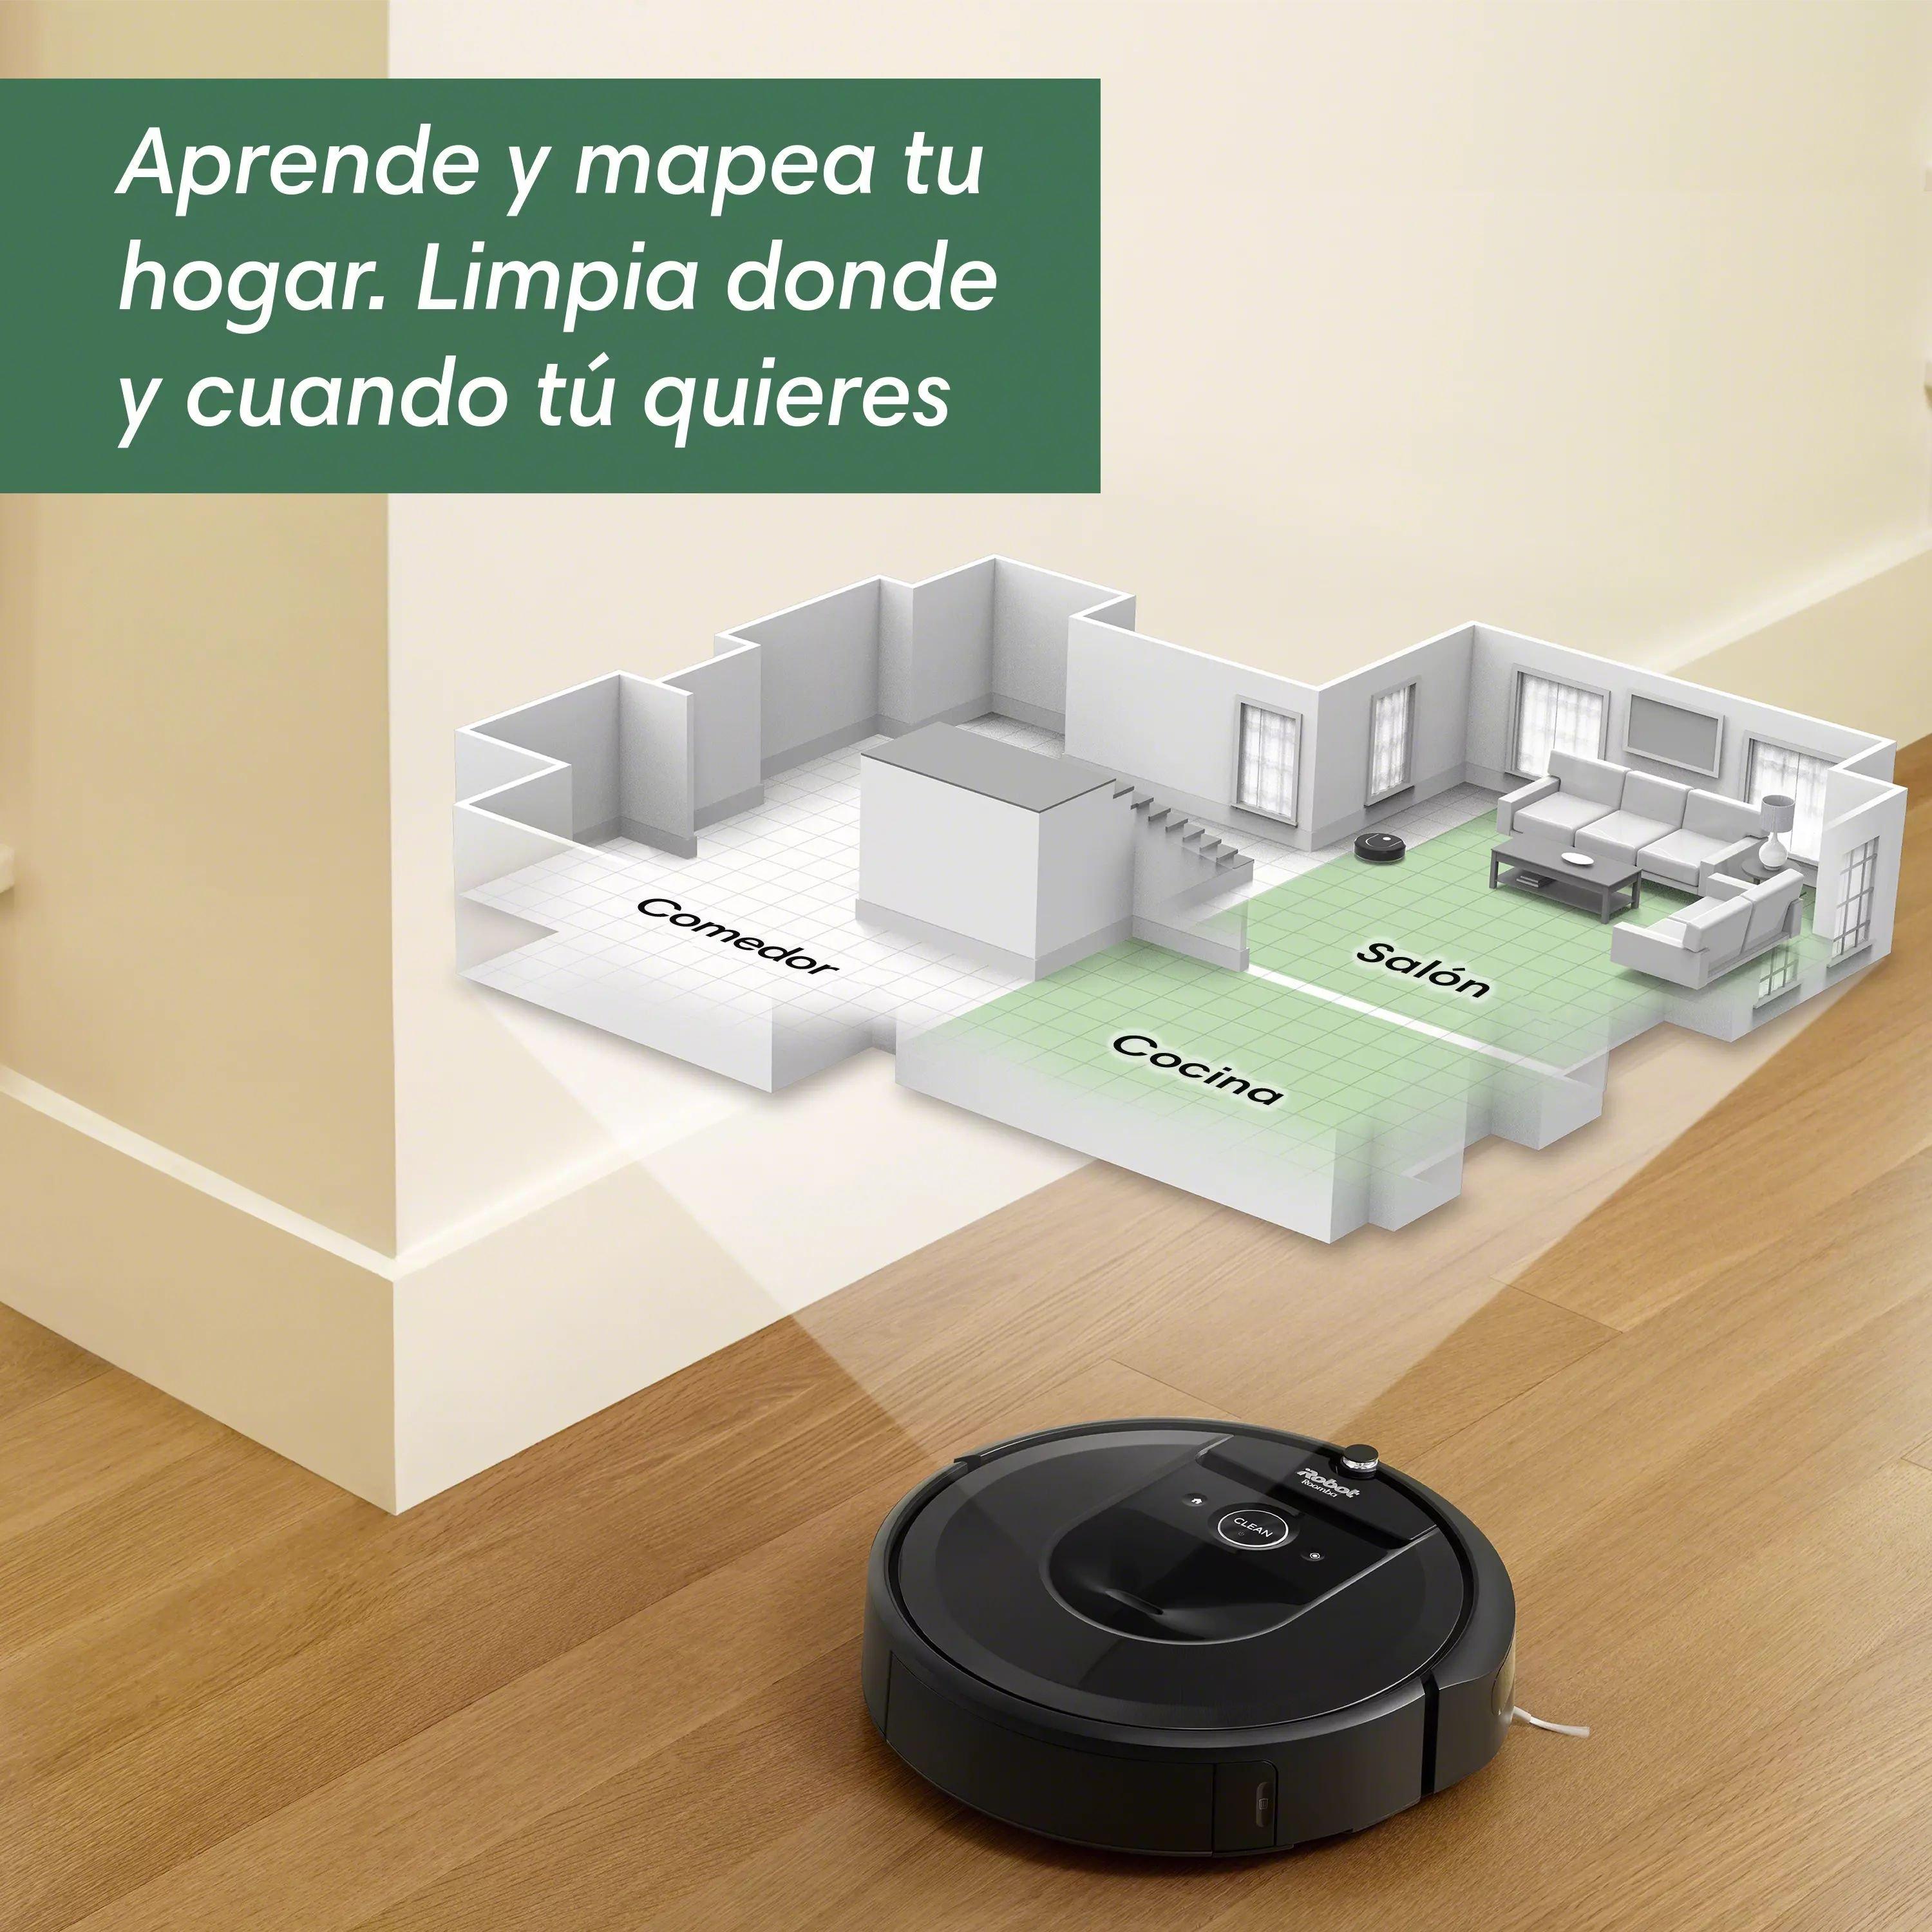 Robot aspirador Roomba® j9+ con conexión Wi-Fi y vaciado automático